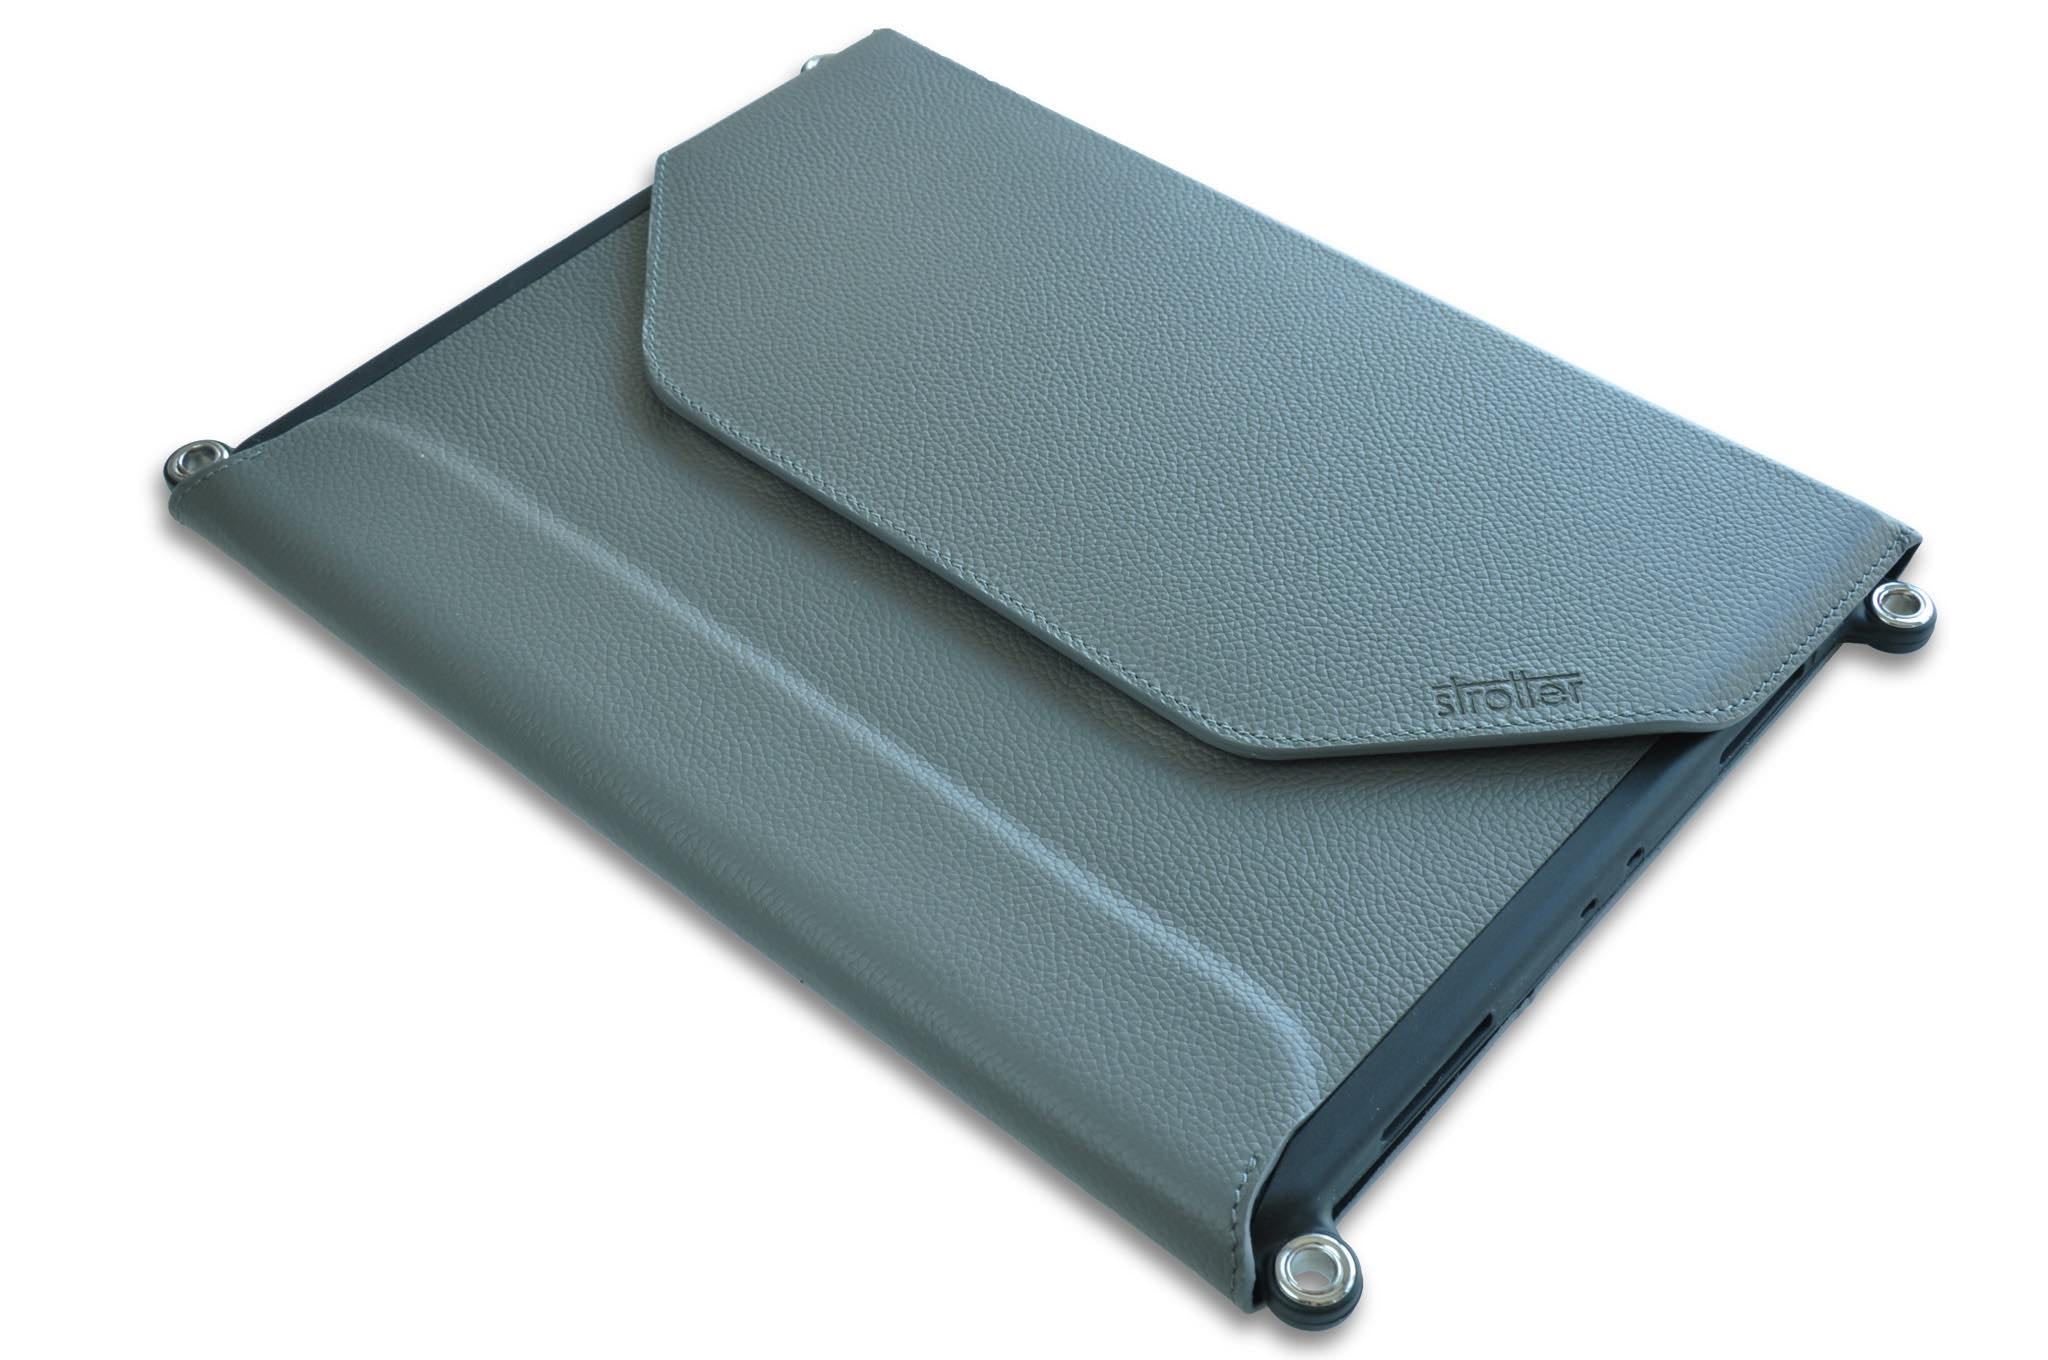 Onafhankelijk afbreken Rentmeester Carrying case for iPad Pro 11” with shoulder strap, leather, Italy.